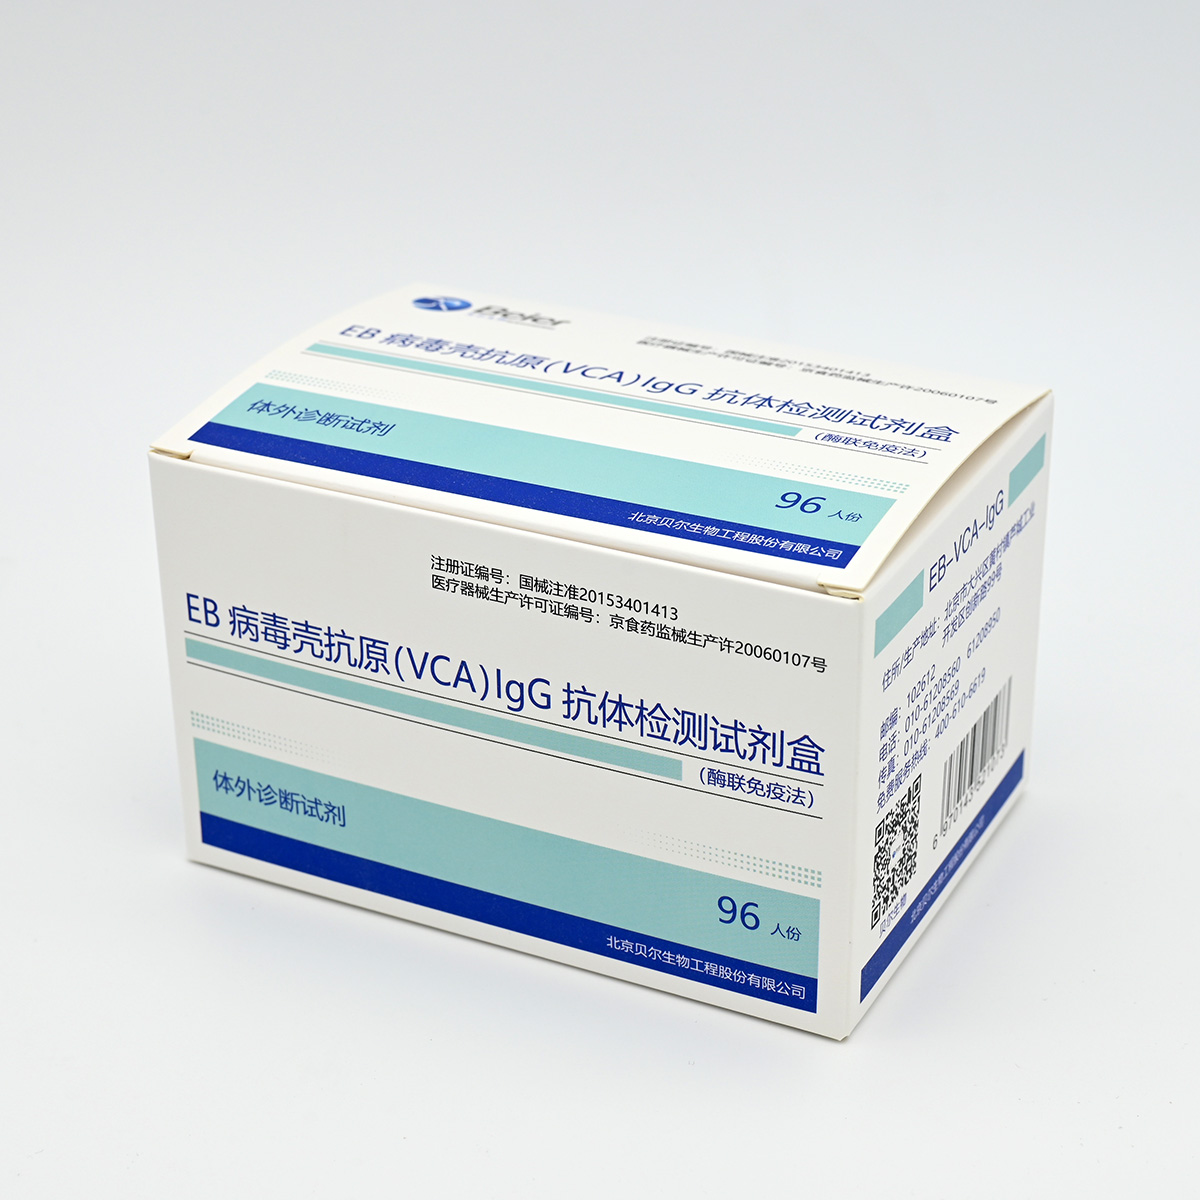 【贝尔】EB病毒壳抗原(VCA)IgG抗体检测试剂盒(酶联免疫法)